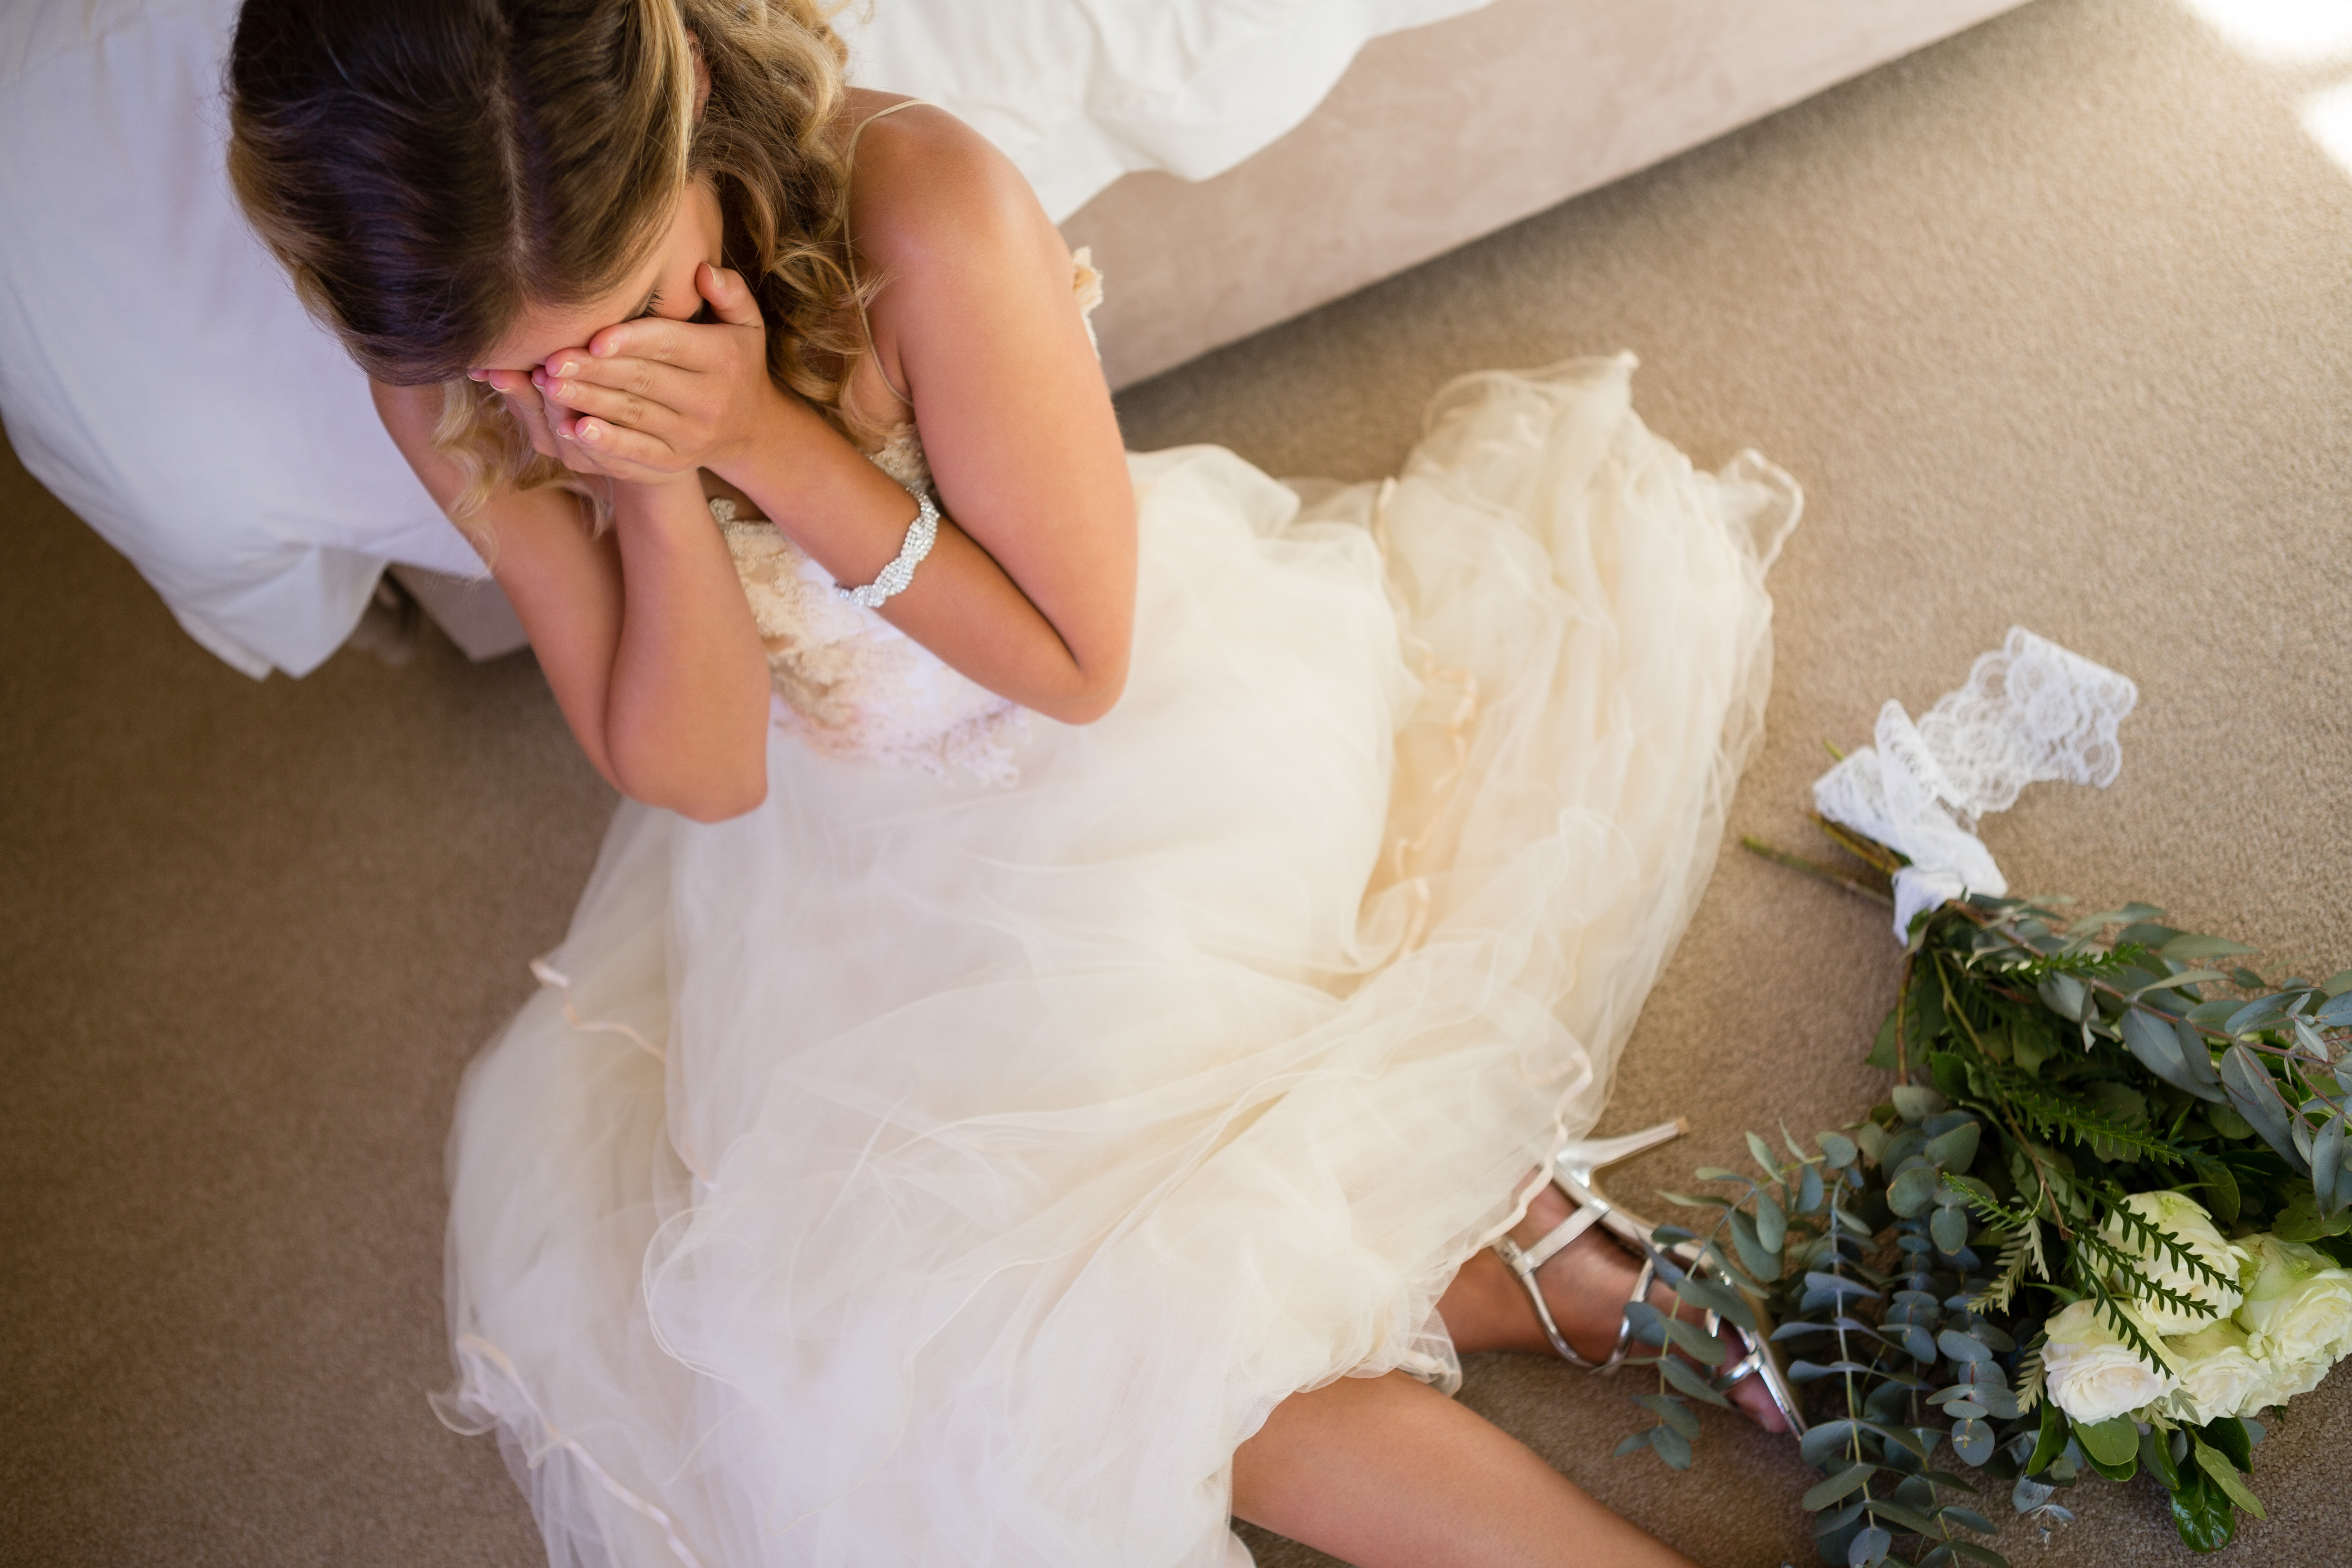 Eine weinende Braut auf dem Boden, während sie sich an ein Bett lehnt | Quelle: Shutterstock